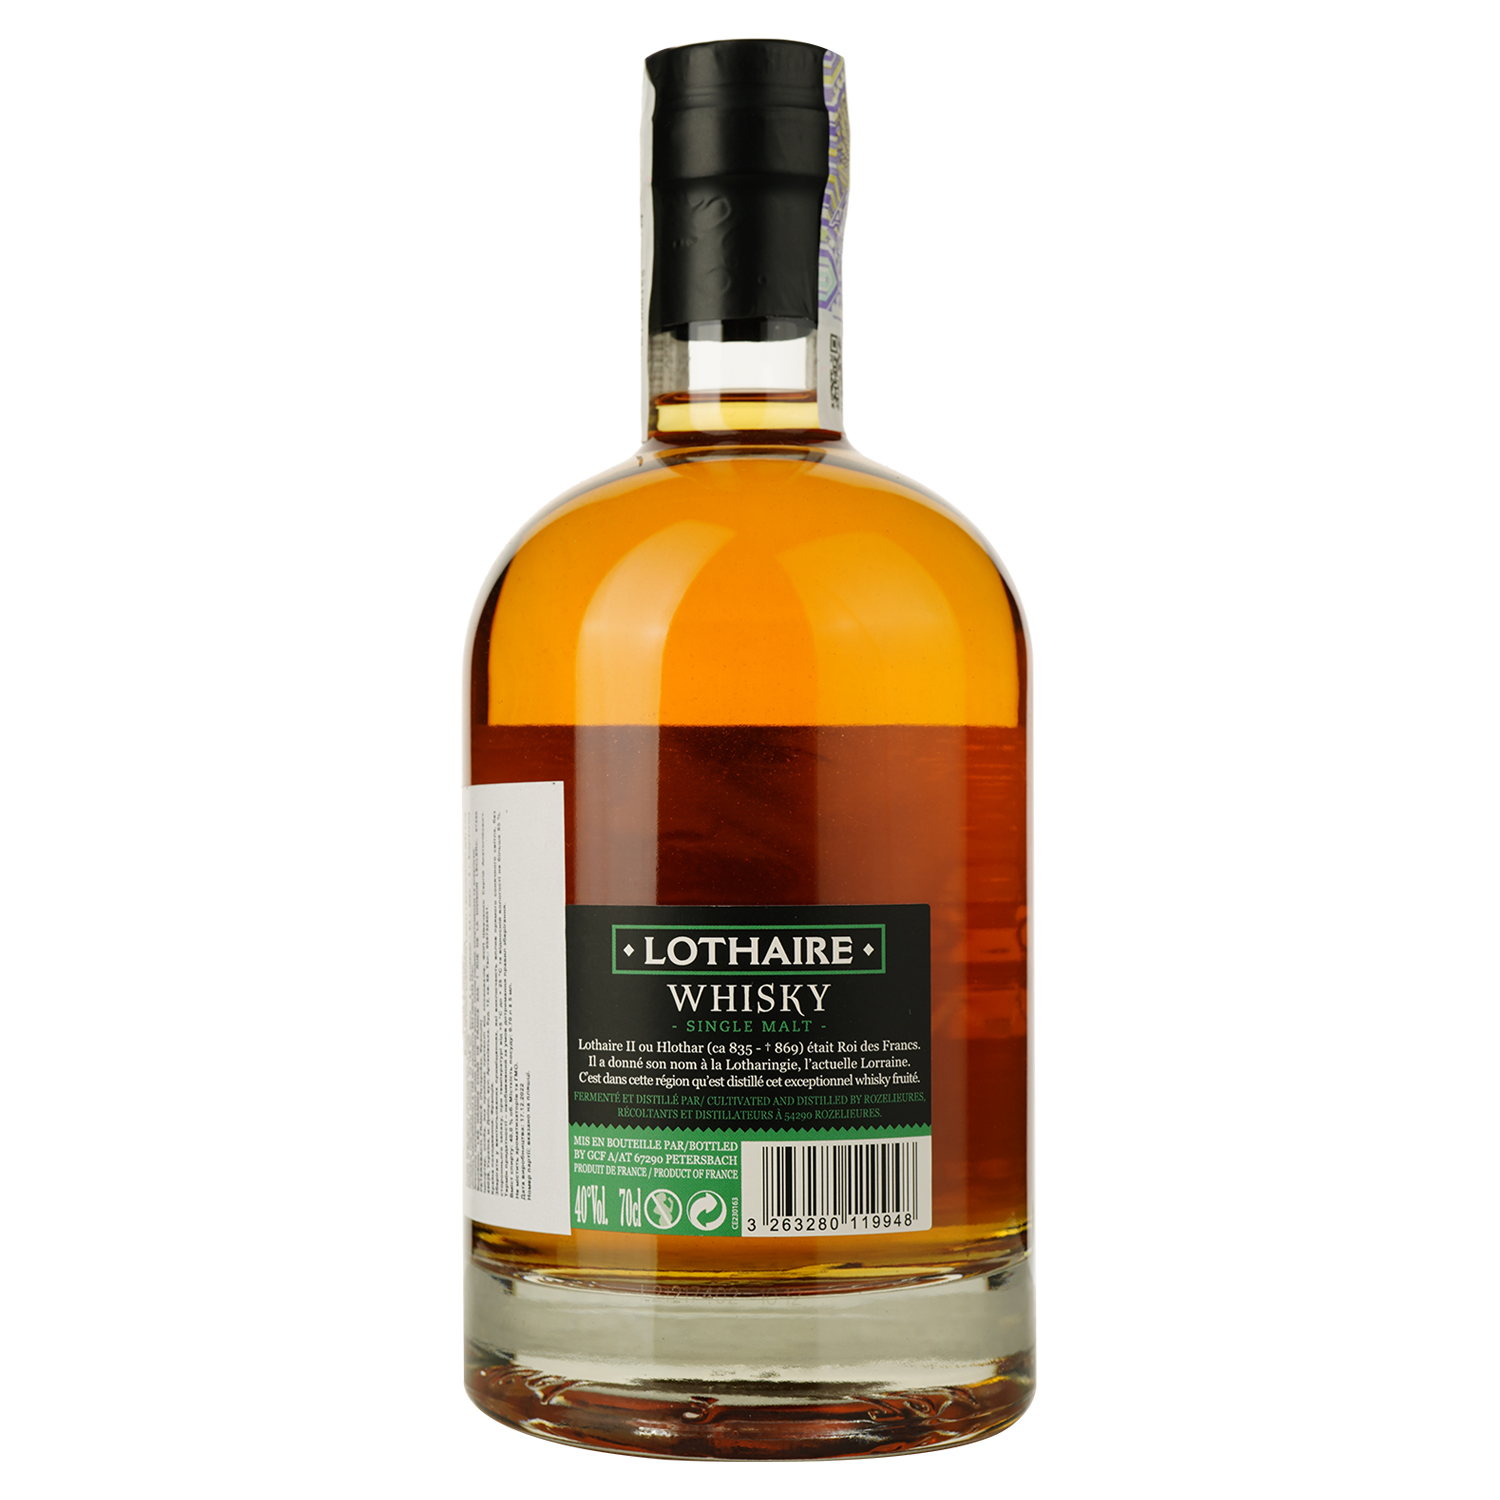 Виски Lothaire Single Malt Scotch Whisky, в подарочной упаковке, 40%, 0.7 л - фото 3